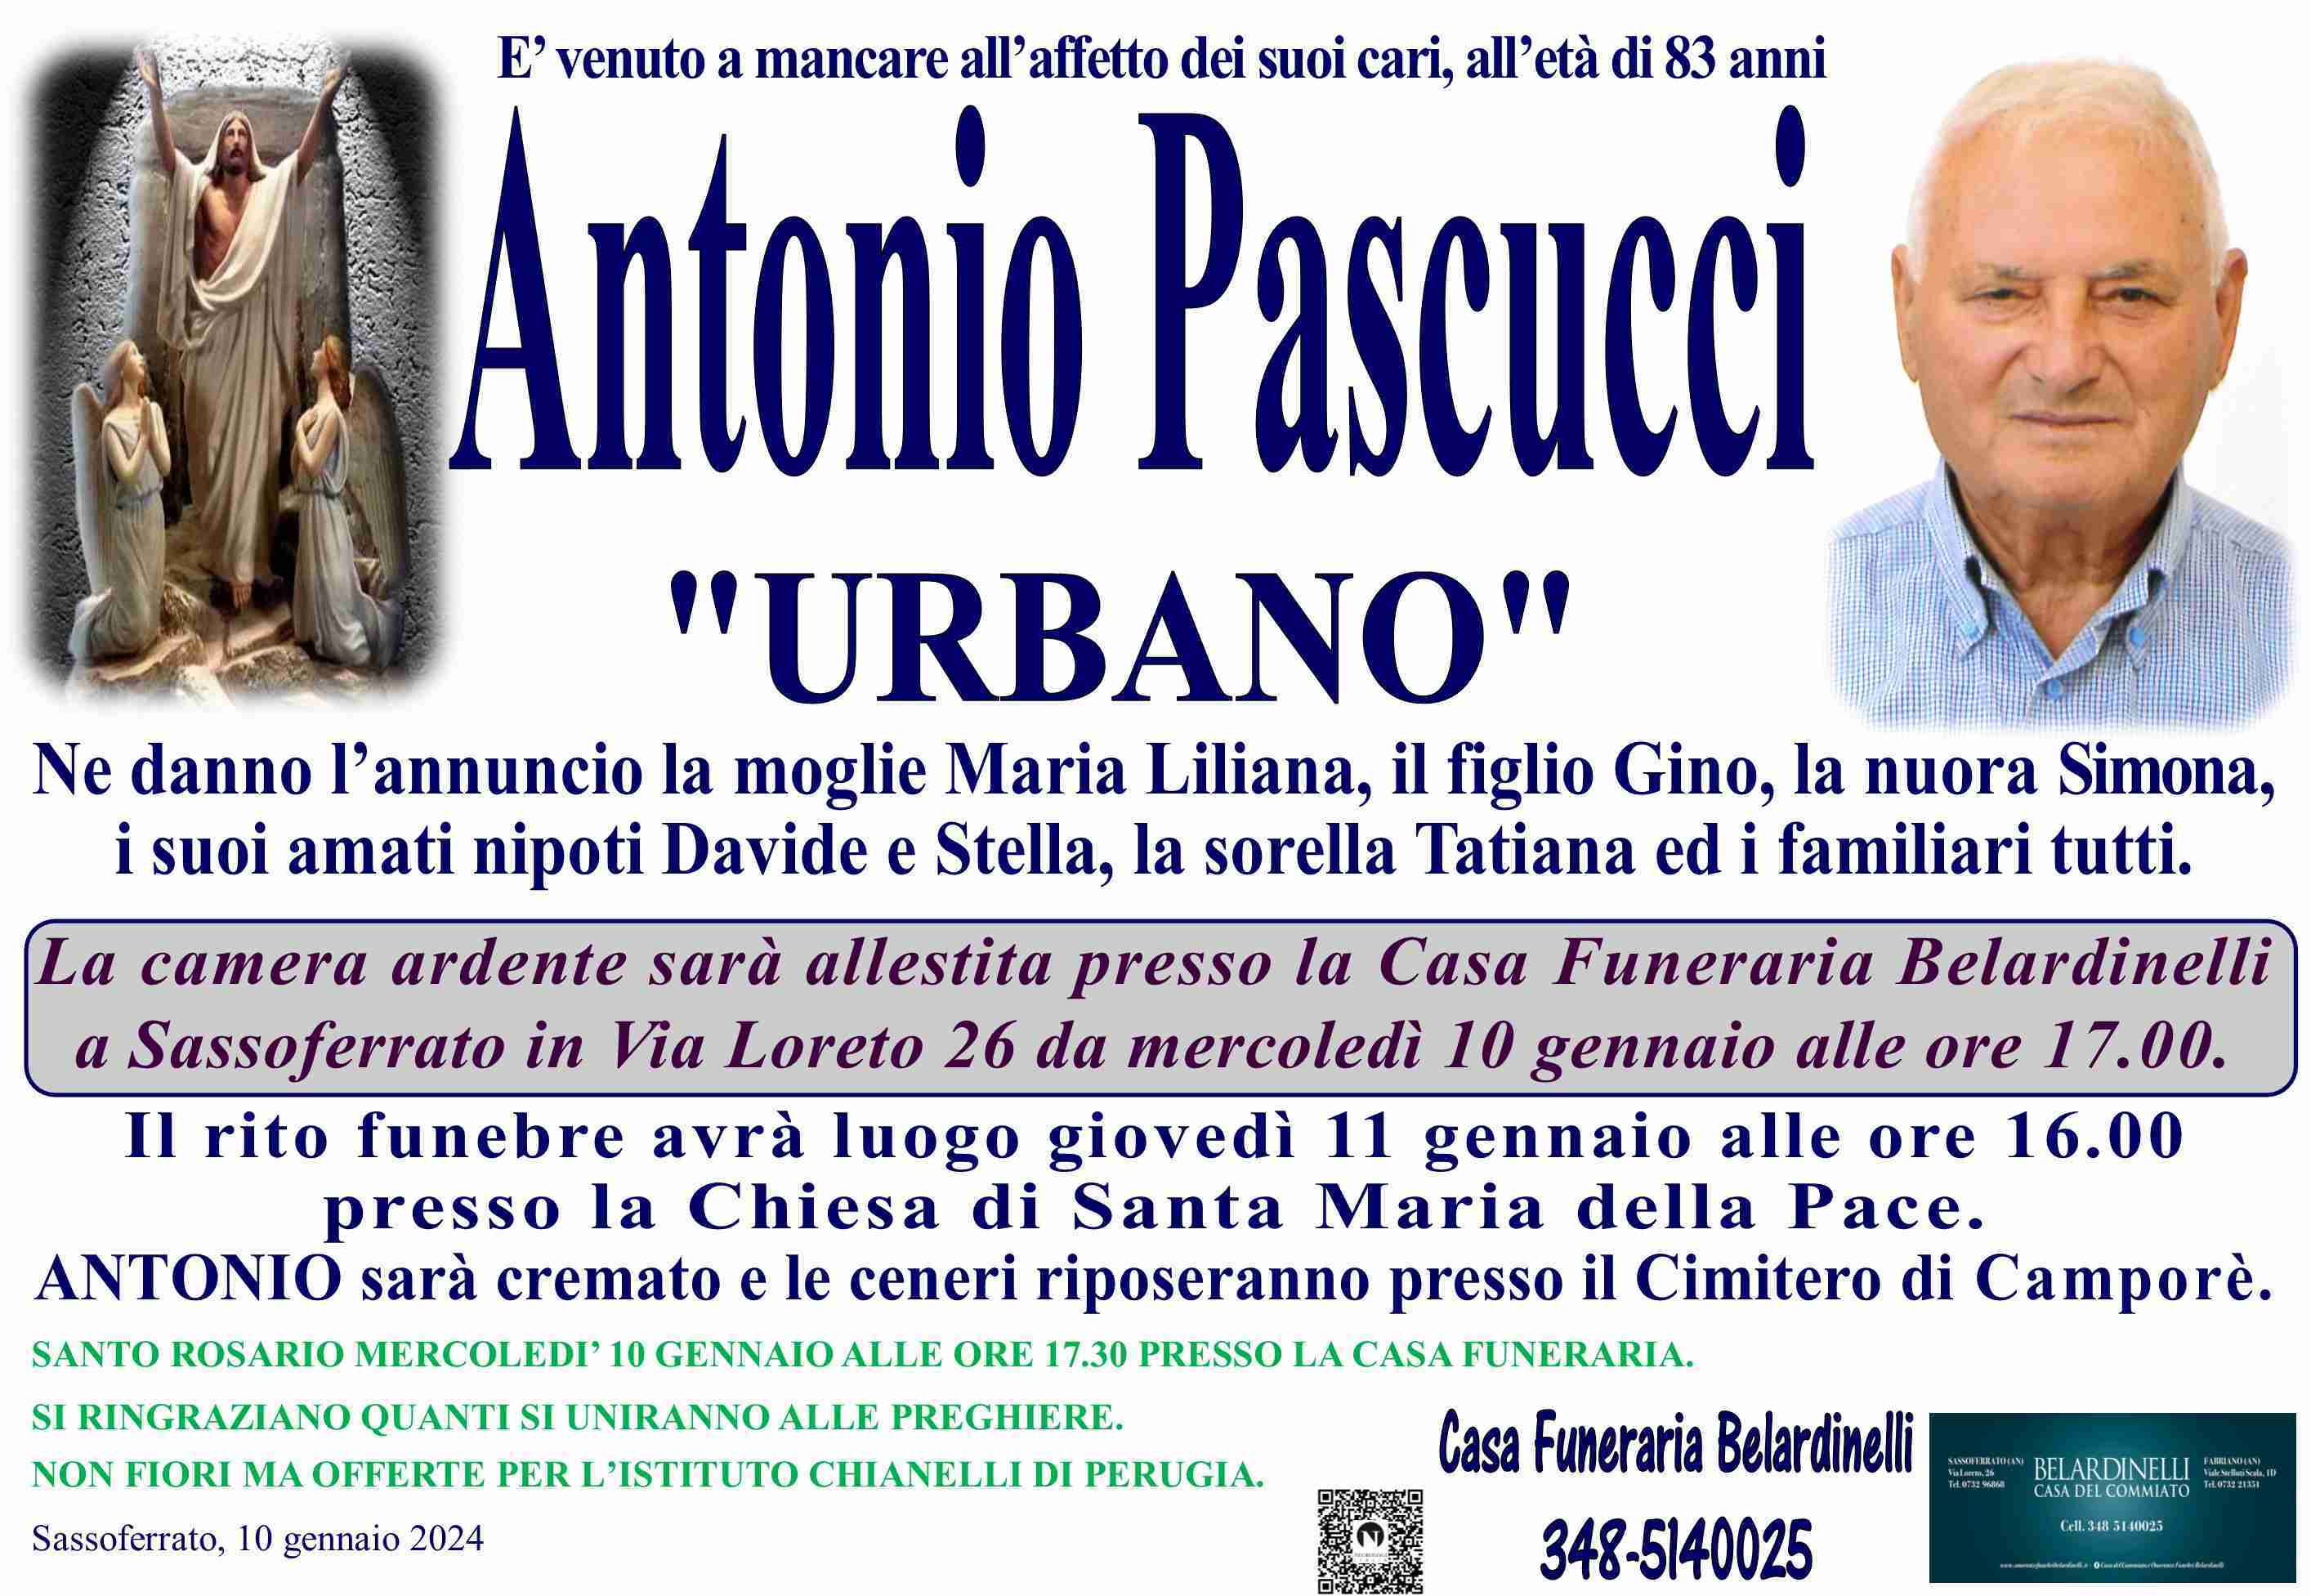 Antonio Pascucci "URBANO"